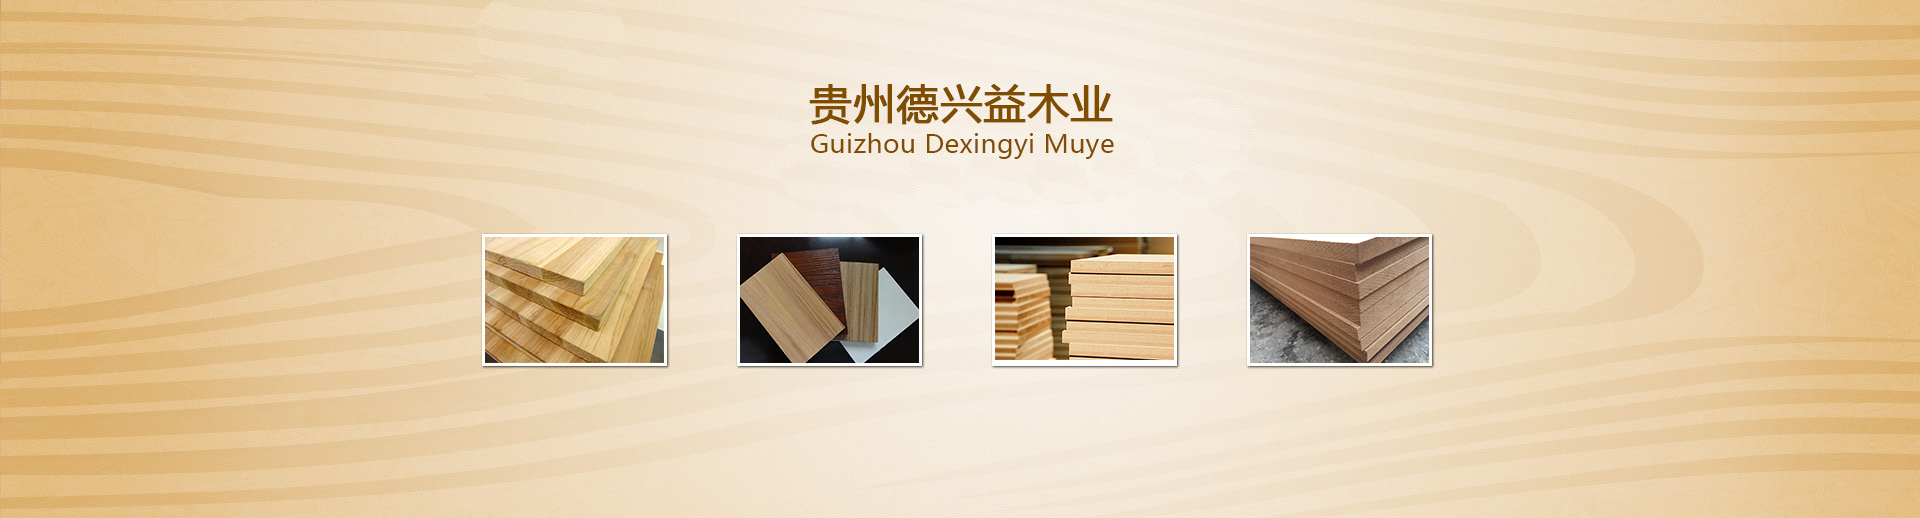 为您带来贵阳木皮与板材的种类及功能介绍